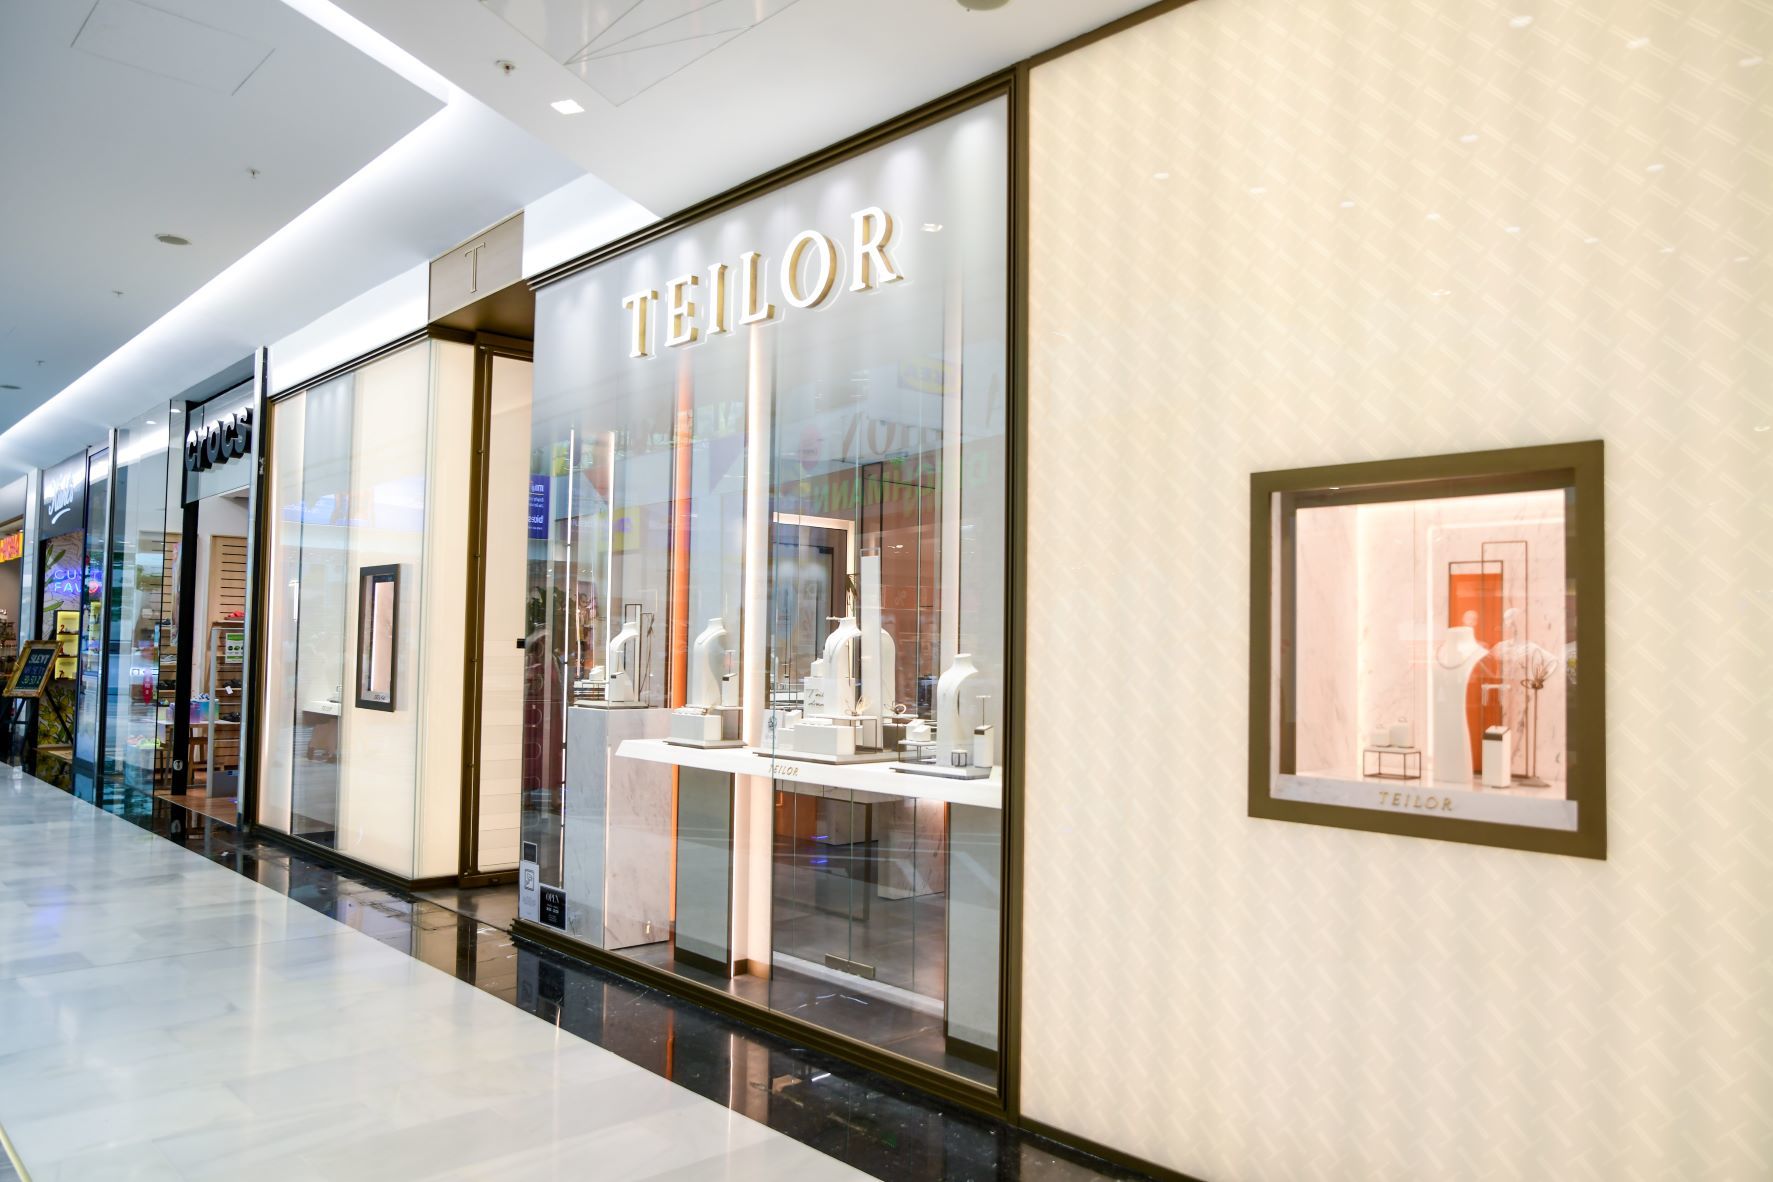 Lanţul internaţional de magazine de bijuterii de lux Teilor deschide primul magazin din Cehia. Compania a bugetat în acest an investiţii în valoare de 27 de milioane de lei în expansiunea internaţională